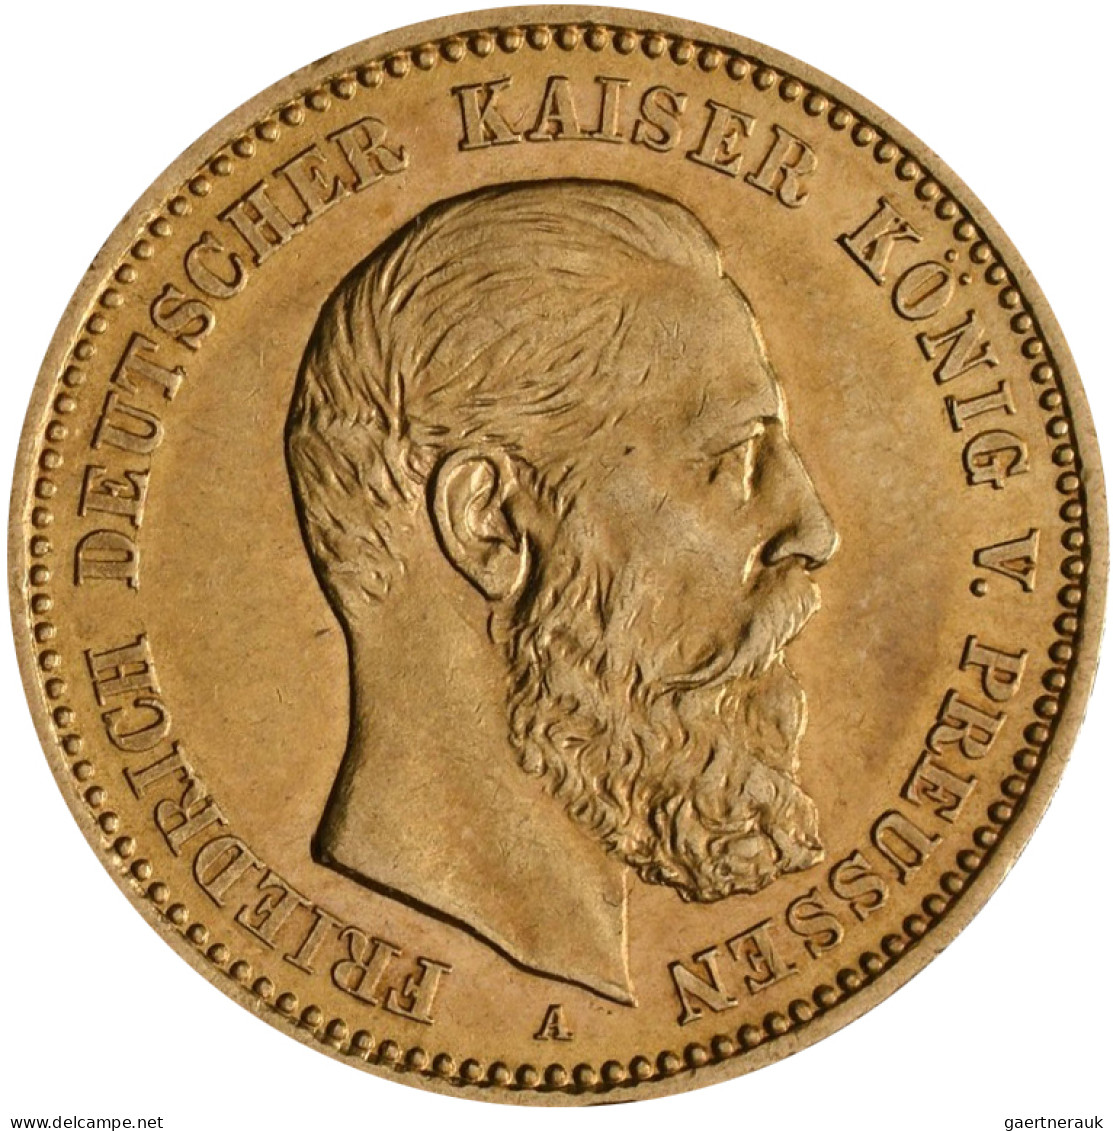 Preußen - Anlagegold: Friedrich III. 1888: 10 Mark 1888 A, Jaeger 247. 3,97 G, 9 - 5, 10 & 20 Mark Oro